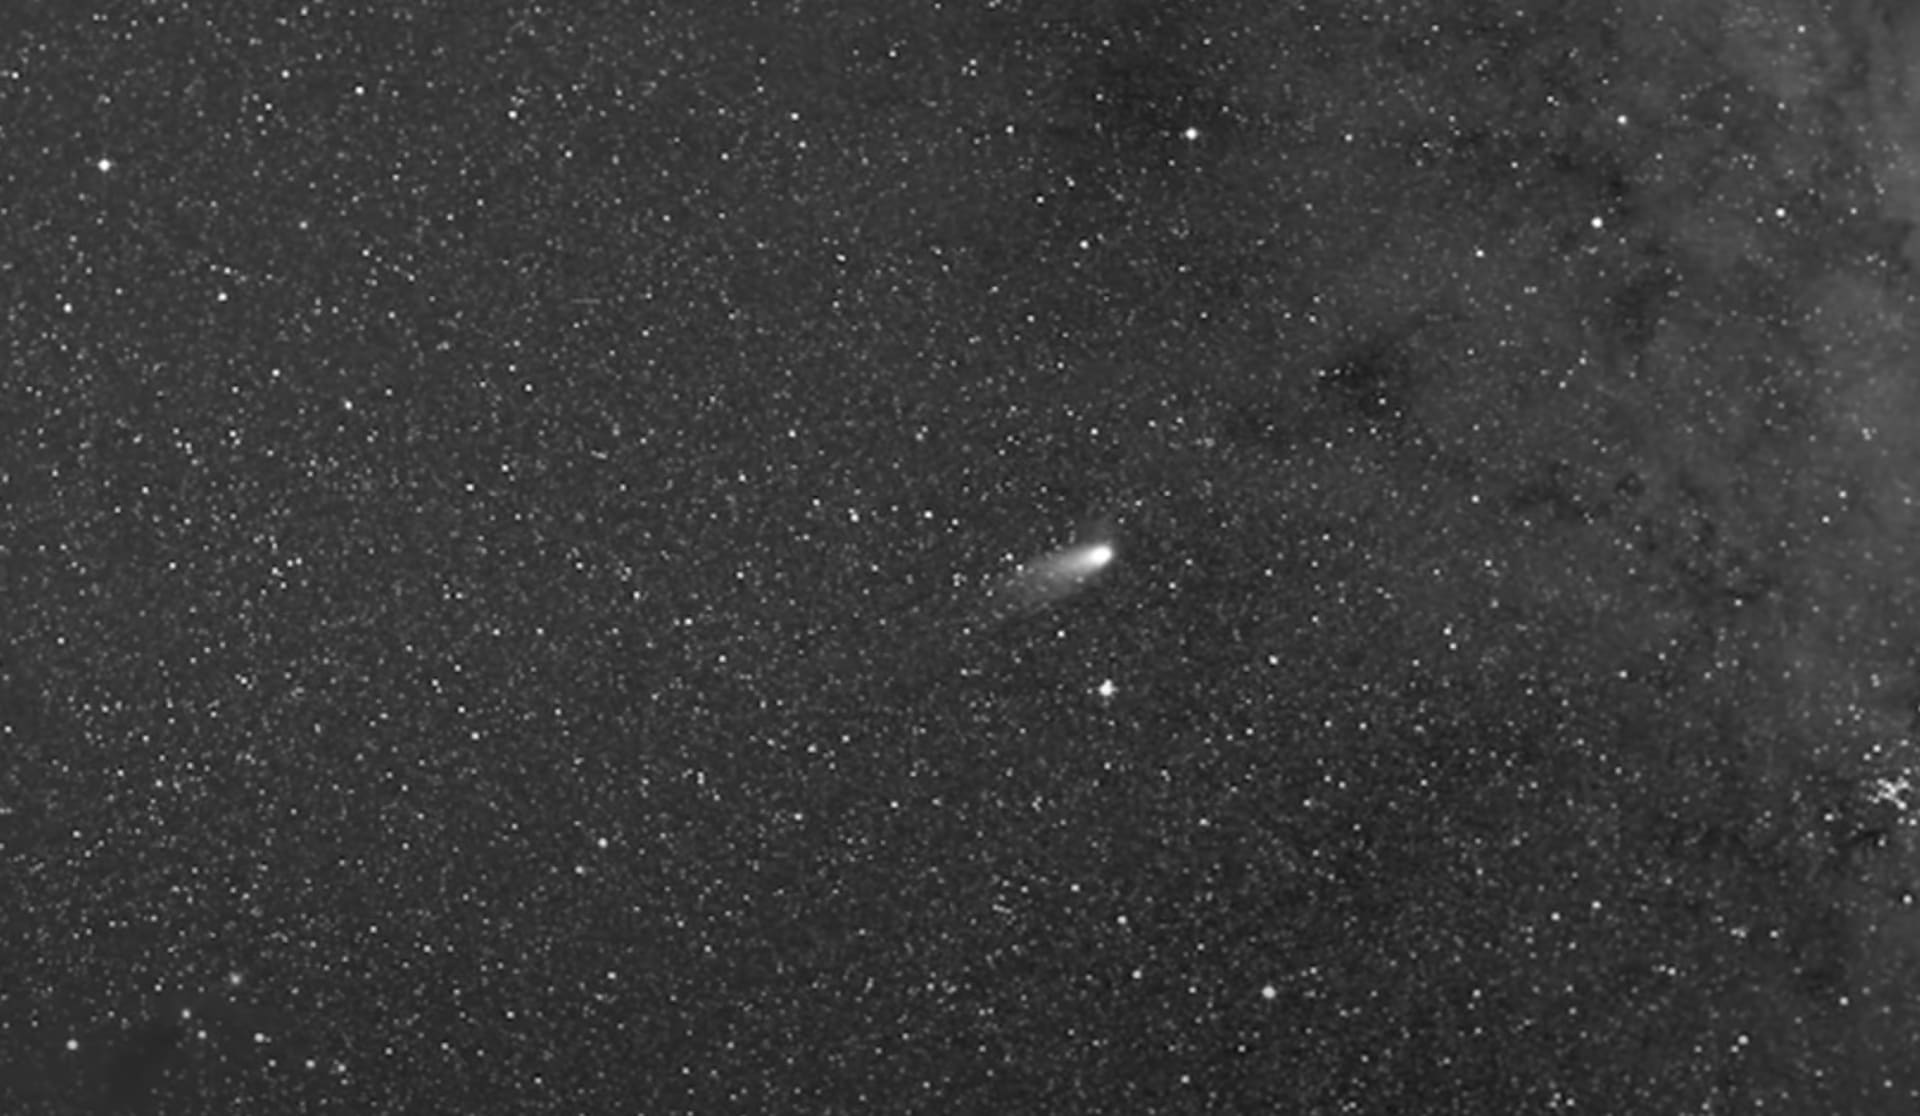 Kometa s názvem Leonard naposledy prolétla kolem Země před 80 tisíci lety.